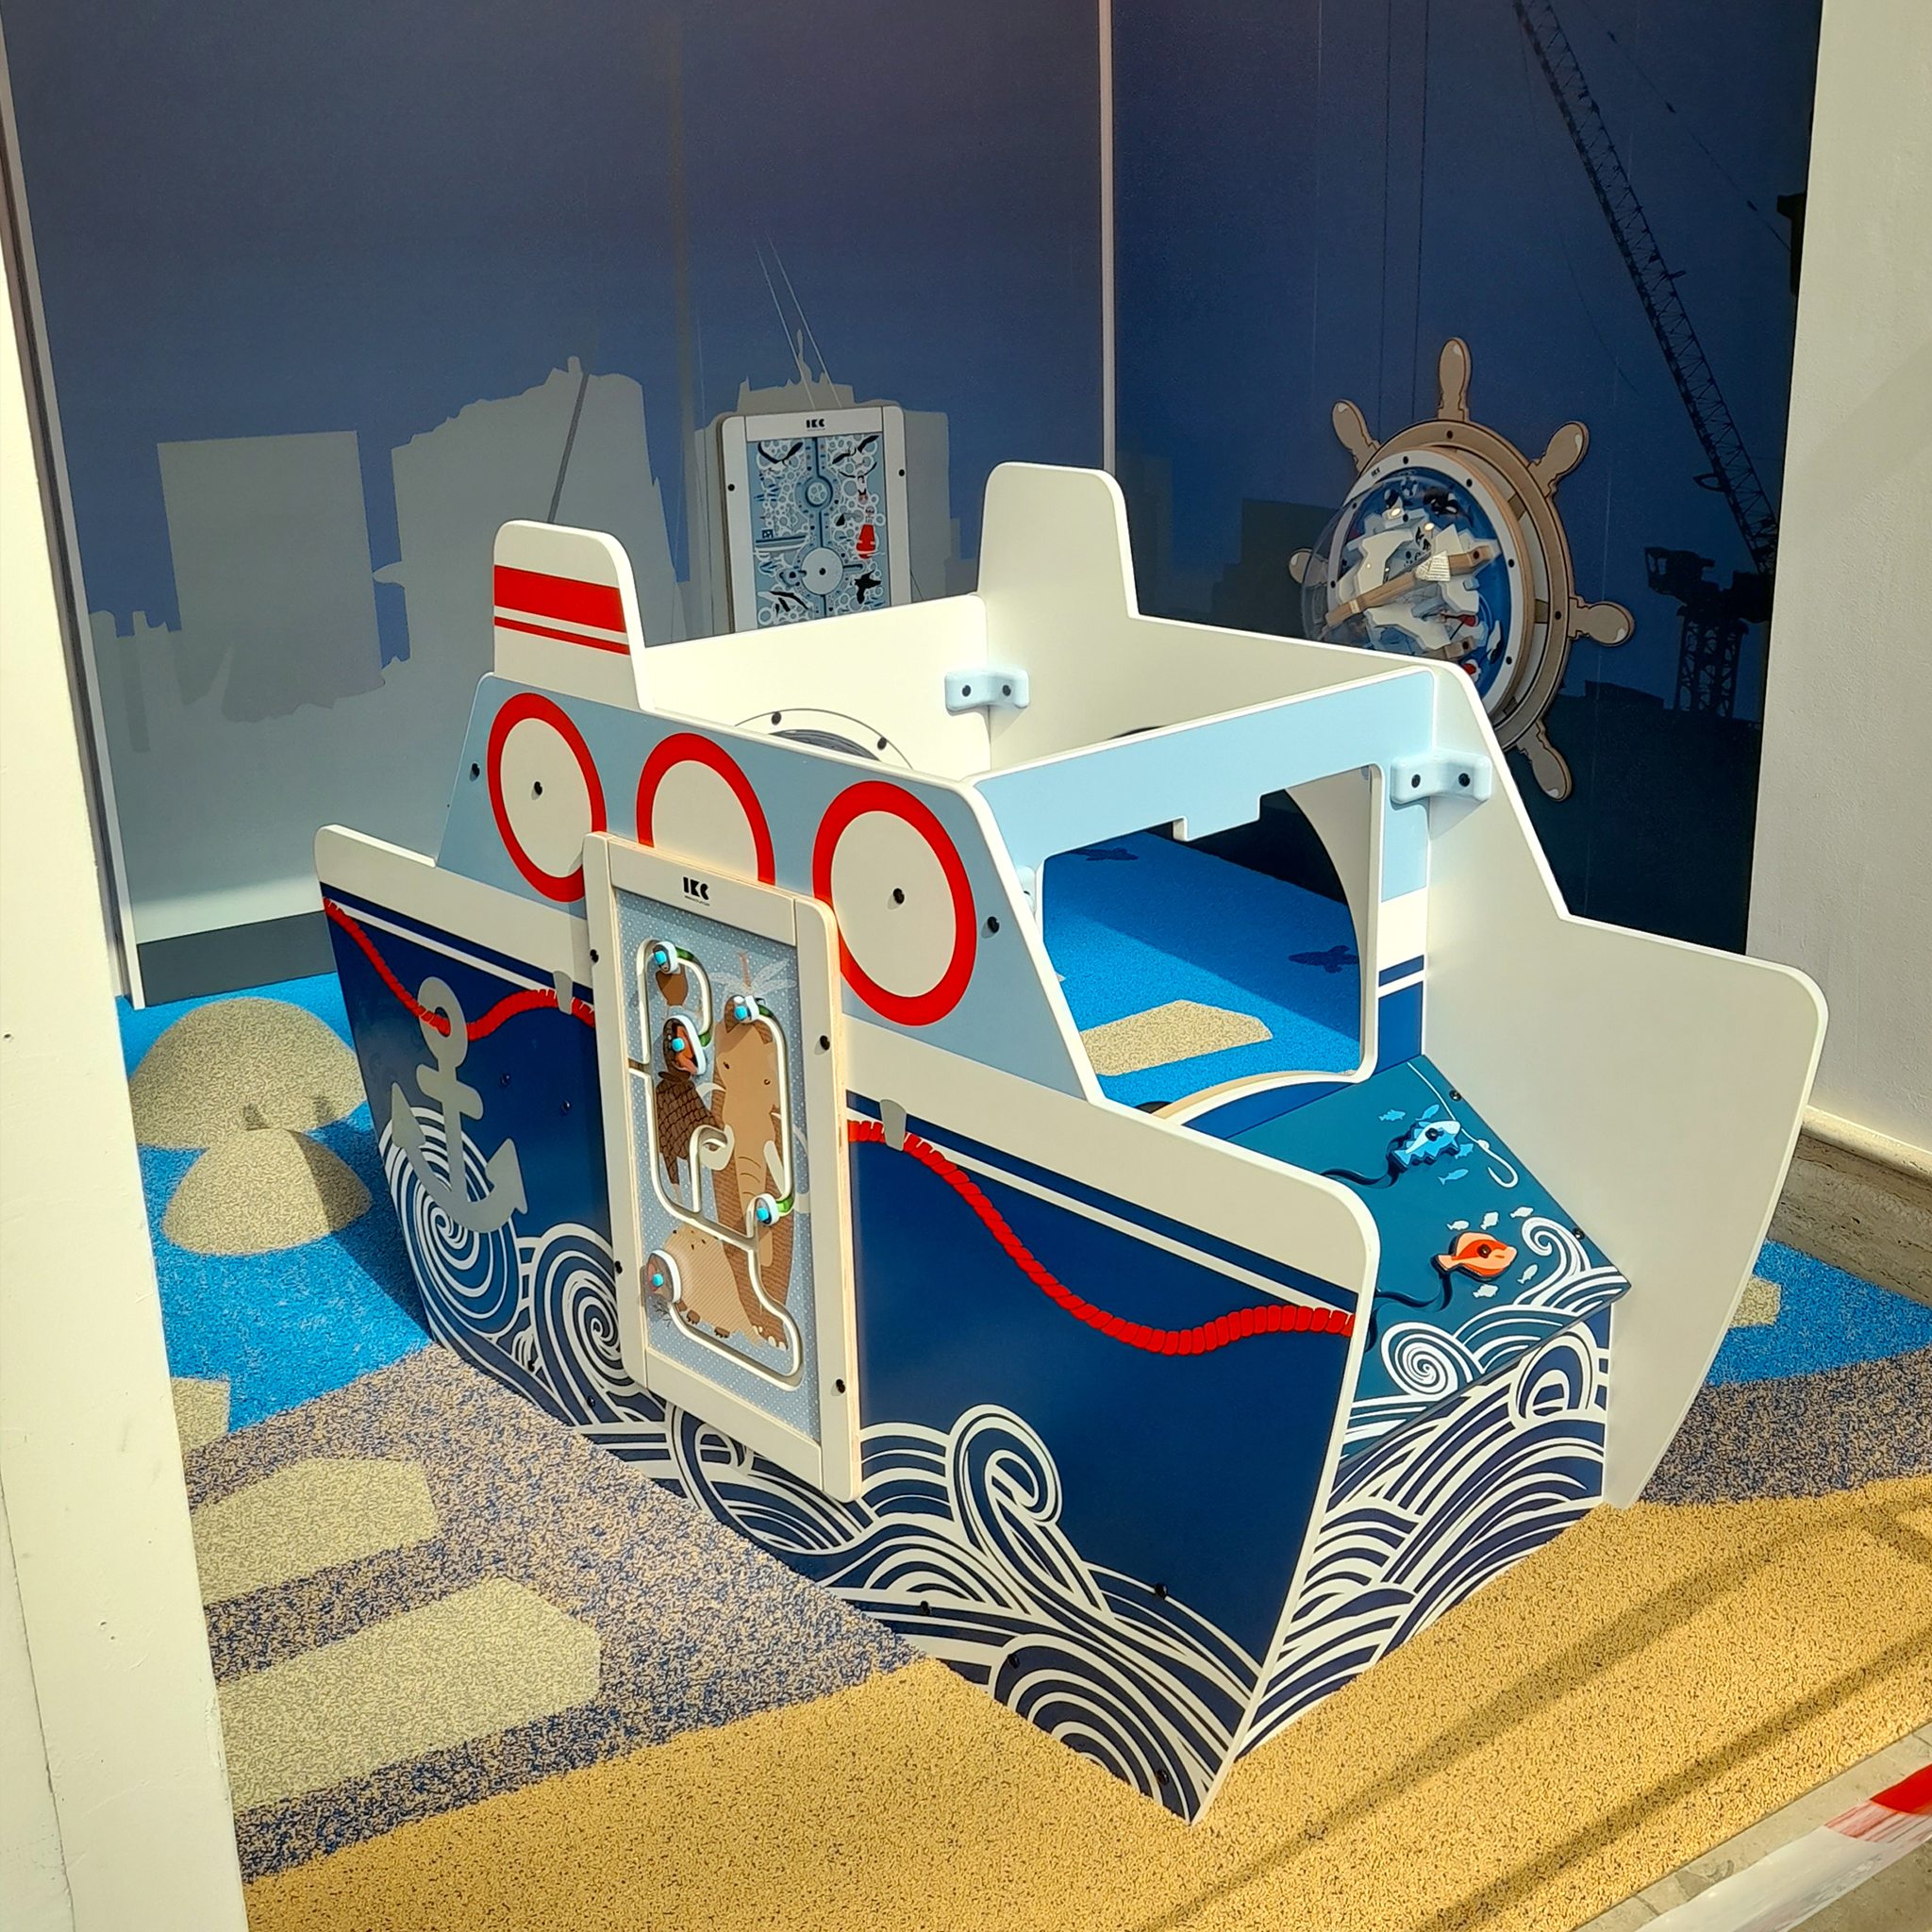 IKC speelhoek met Arctic zee thema en het speelboot All Aboard speelsysteem in het Mein Outlet shopping center in de havenstad Bremerhaven in Duitsland